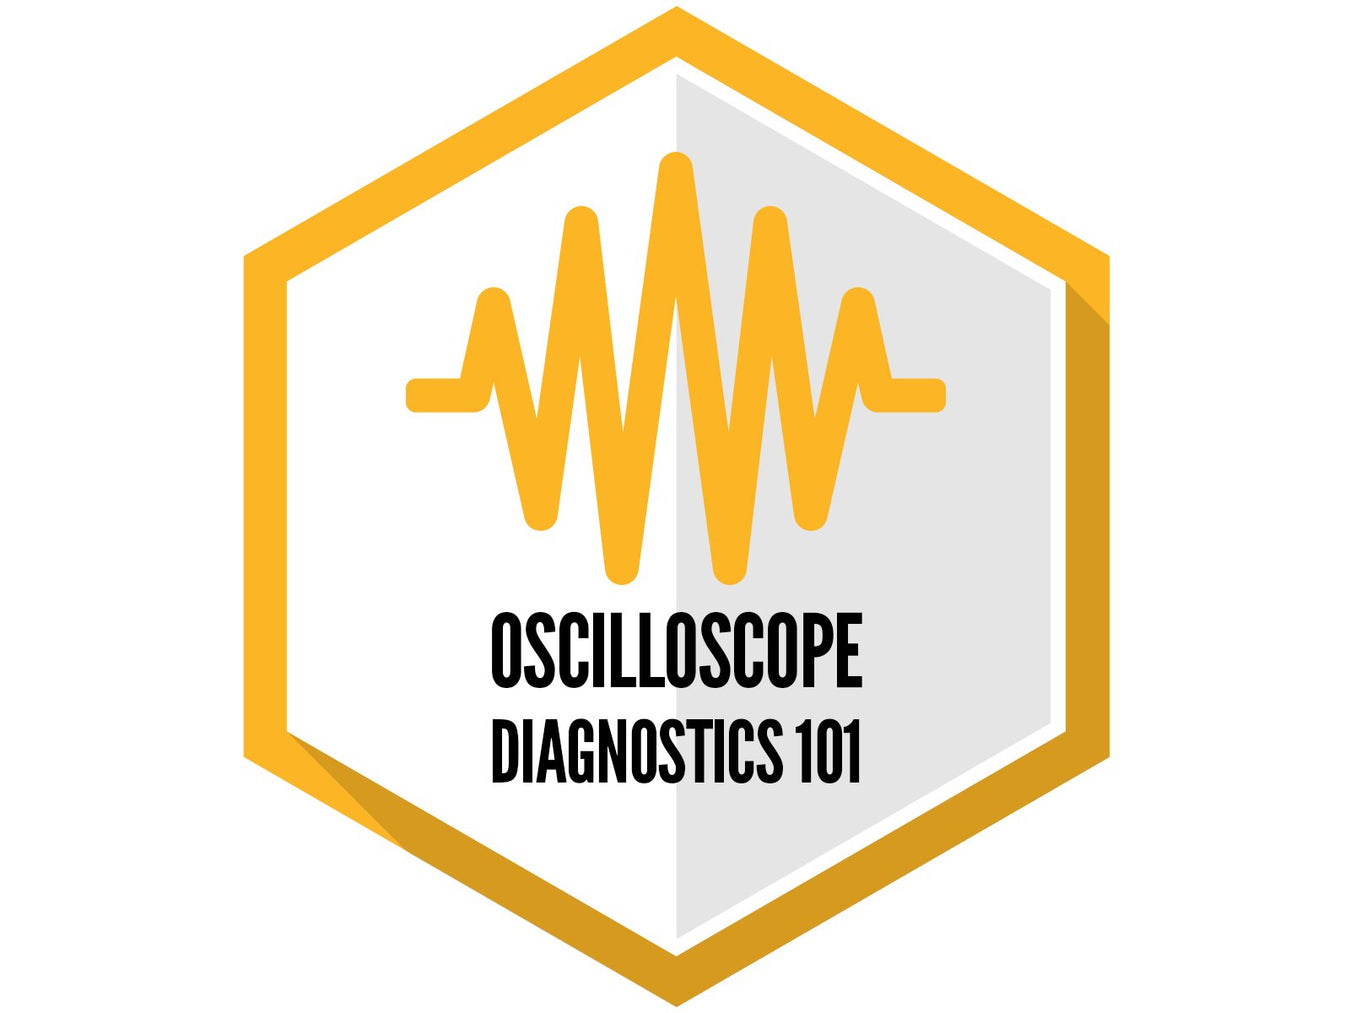 Oscilloscope Diagnostics